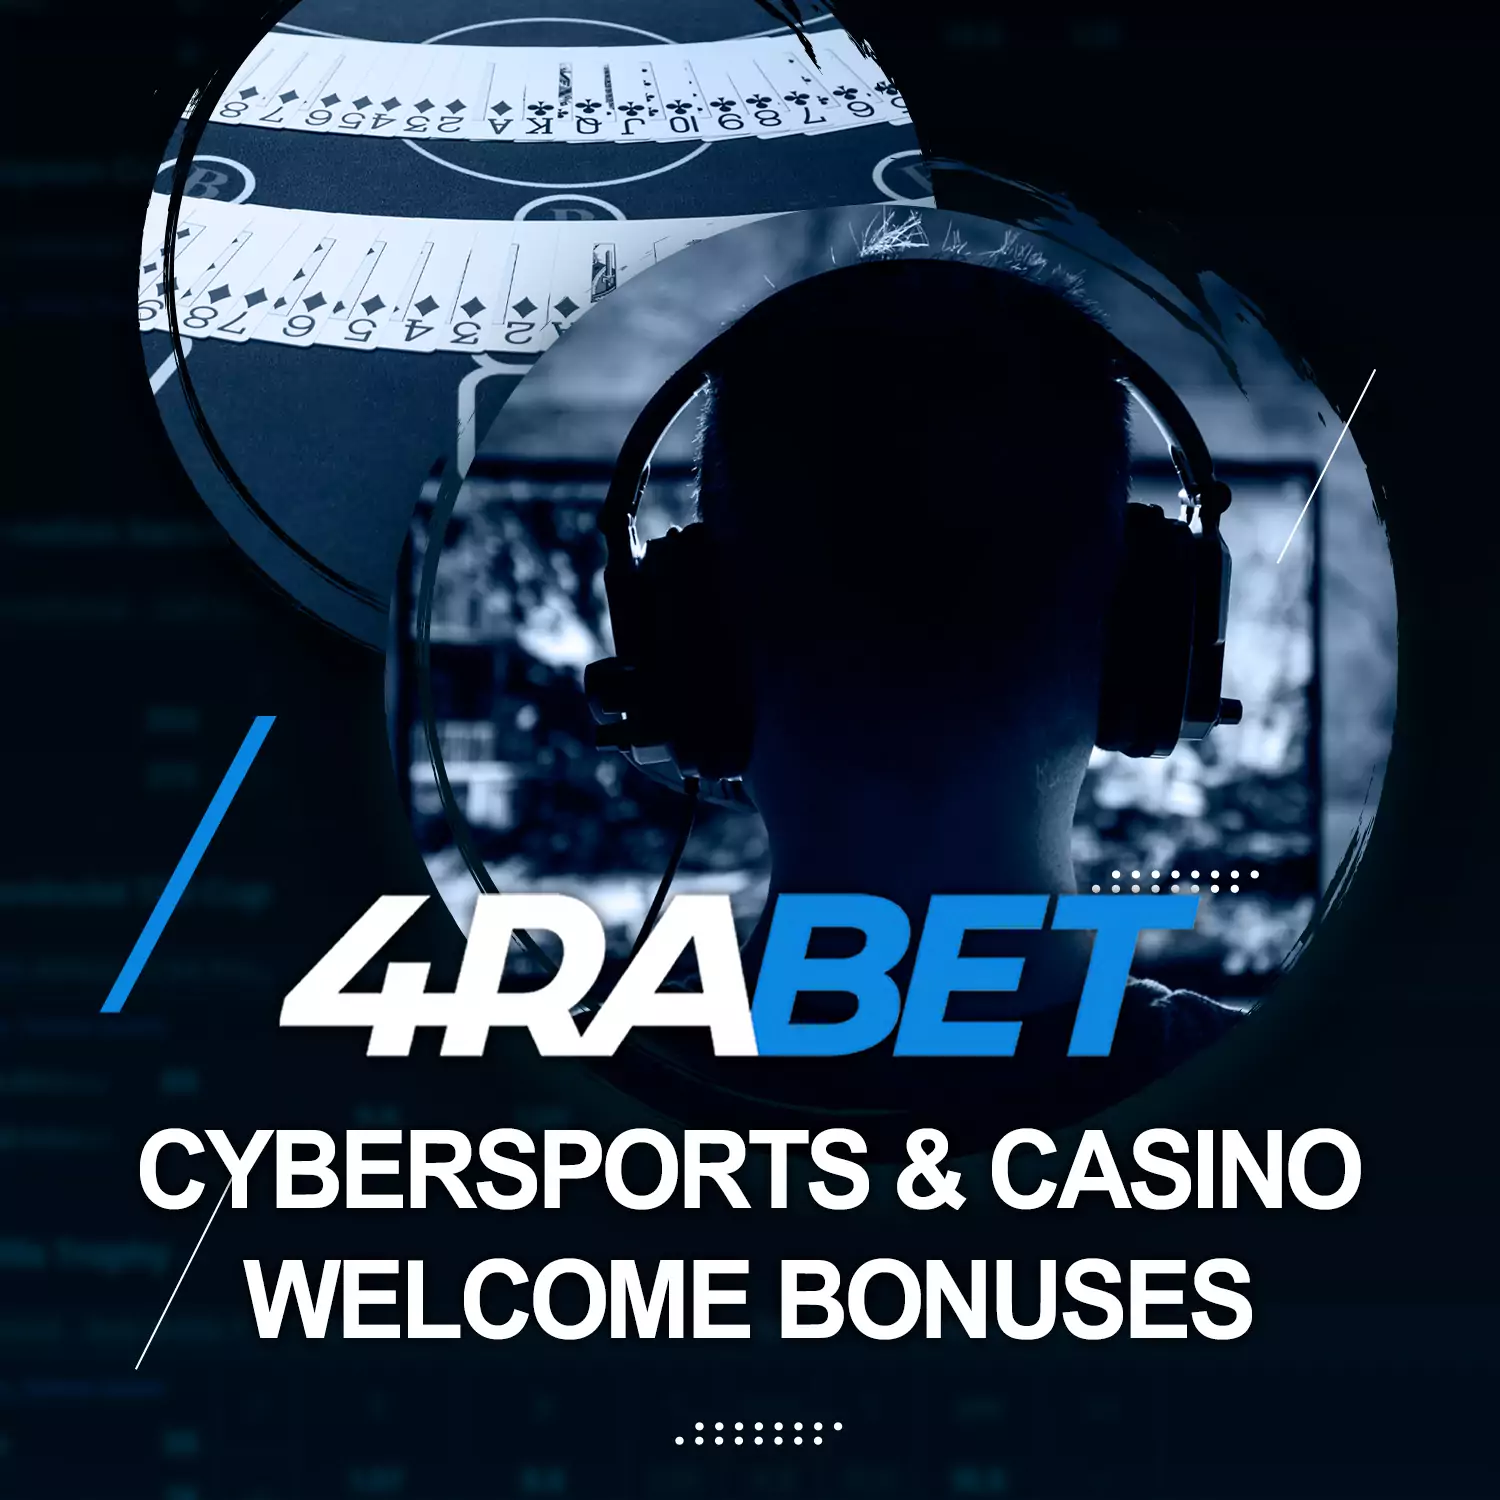 4rabet पर आप साइबरस्पोर्ट्स सट्टेबाजी या कैसीनो गेम खेलने के लिए एक स्वागत योग्य बोनस प्राप्त कर सकते हैं।